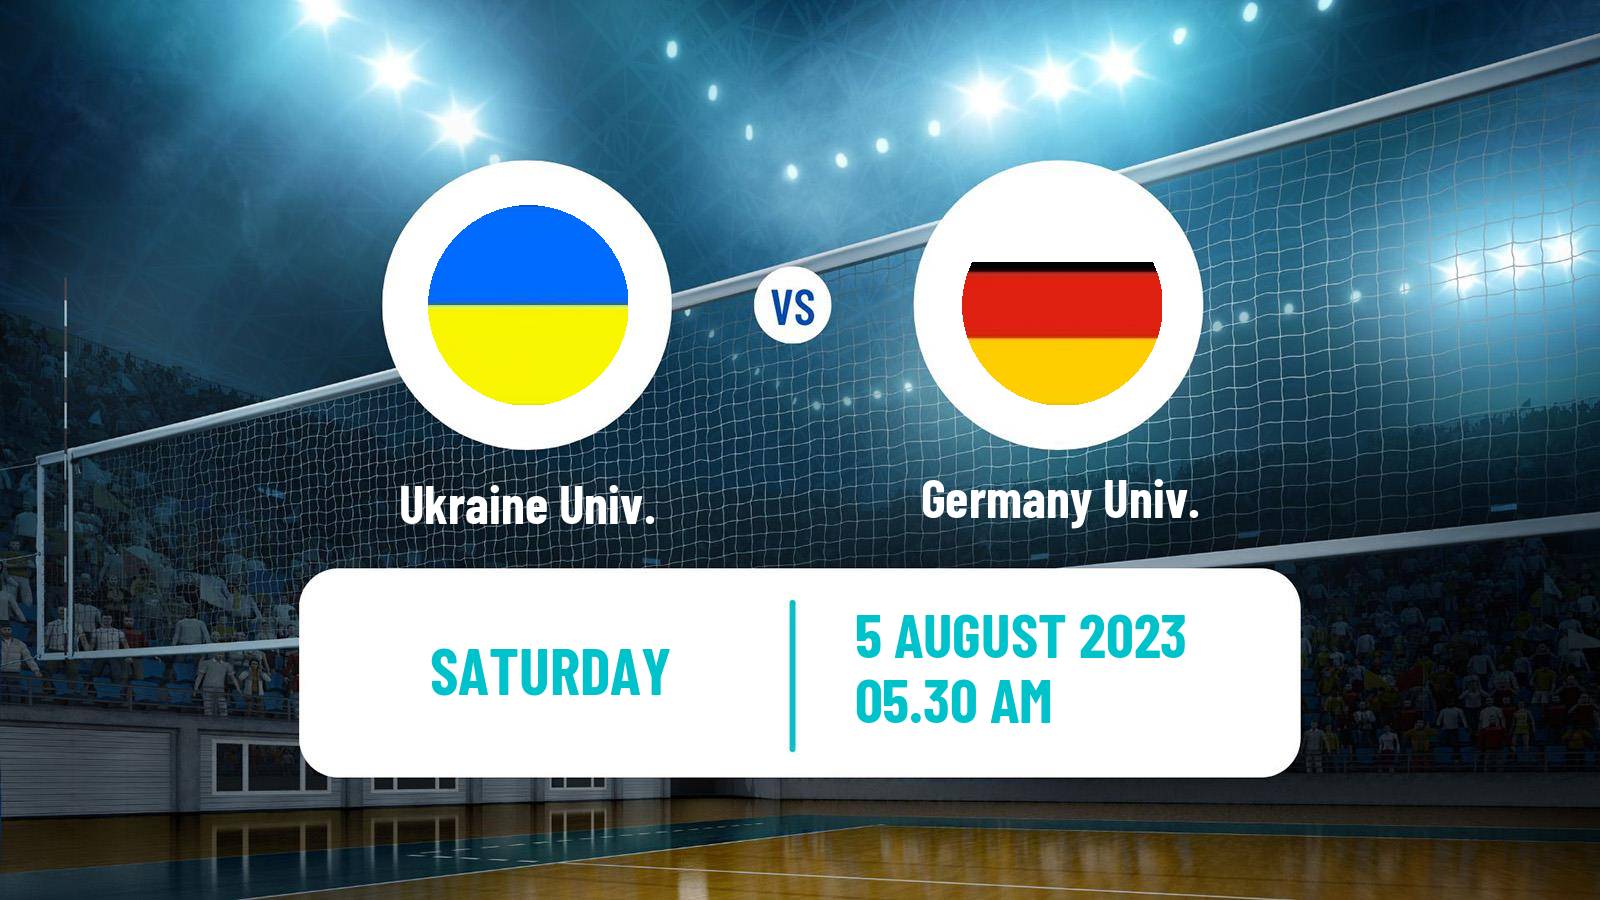 Volleyball Universiade Volleyball Ukraine Univ. - Germany Univ.